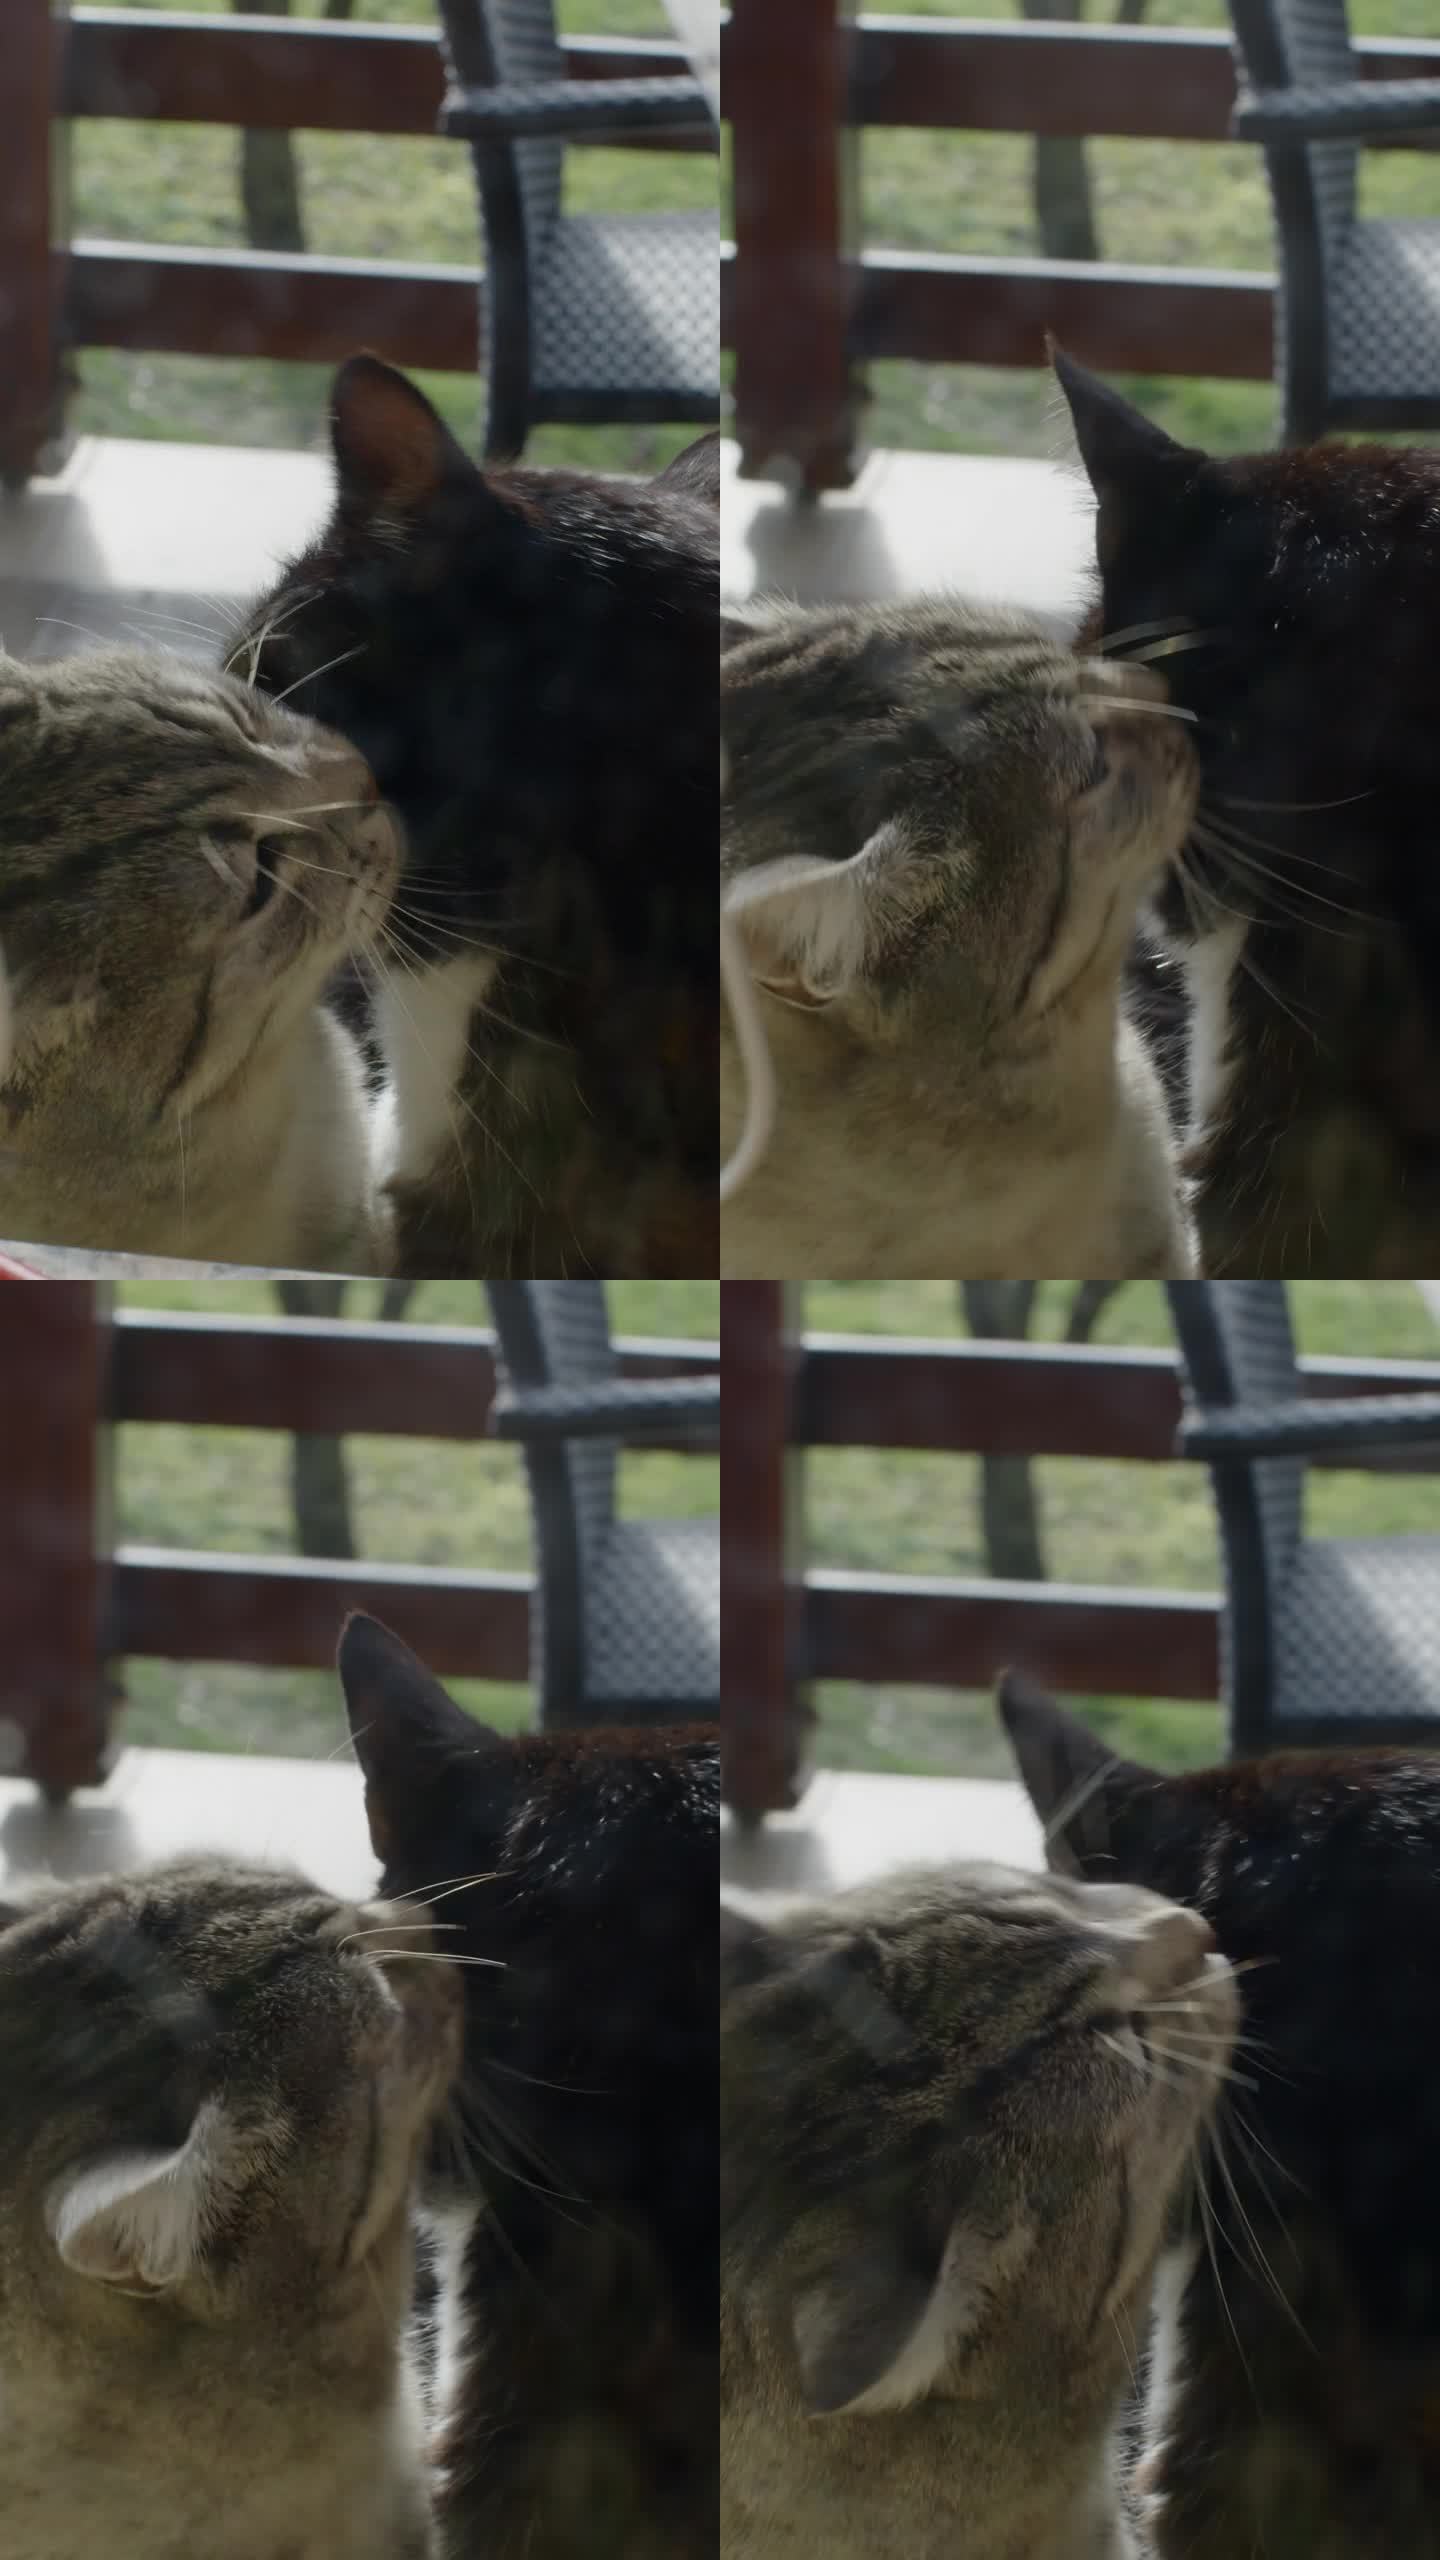 一只猫在烛台上深情地舔另一只猫